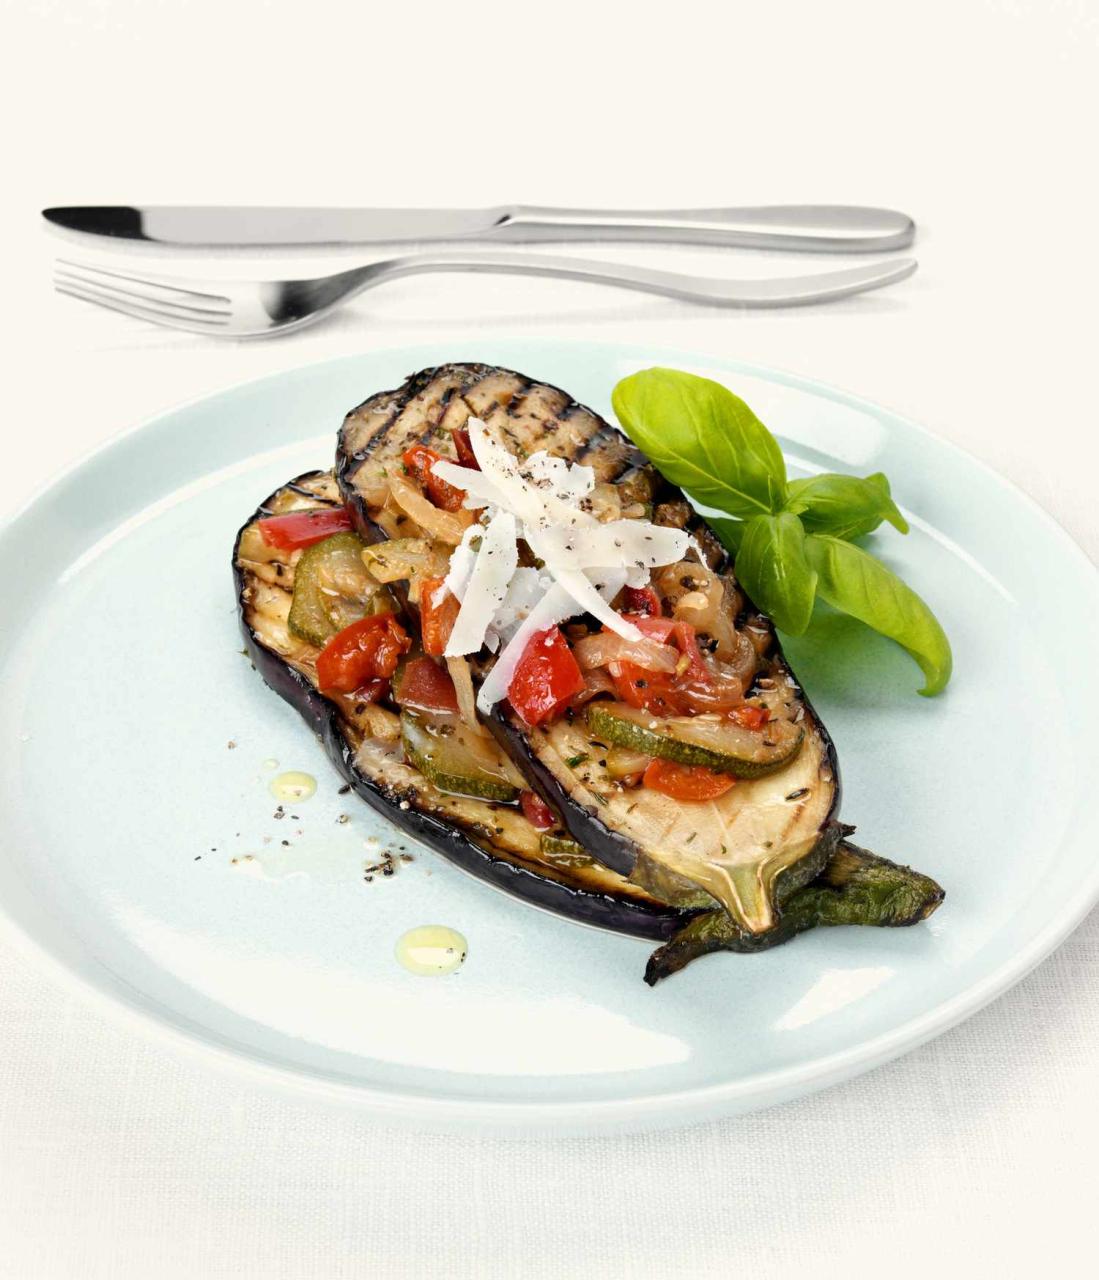 Vegetarian Tapas Recipes — Eatwell101, 54% OFF | rbk.bm